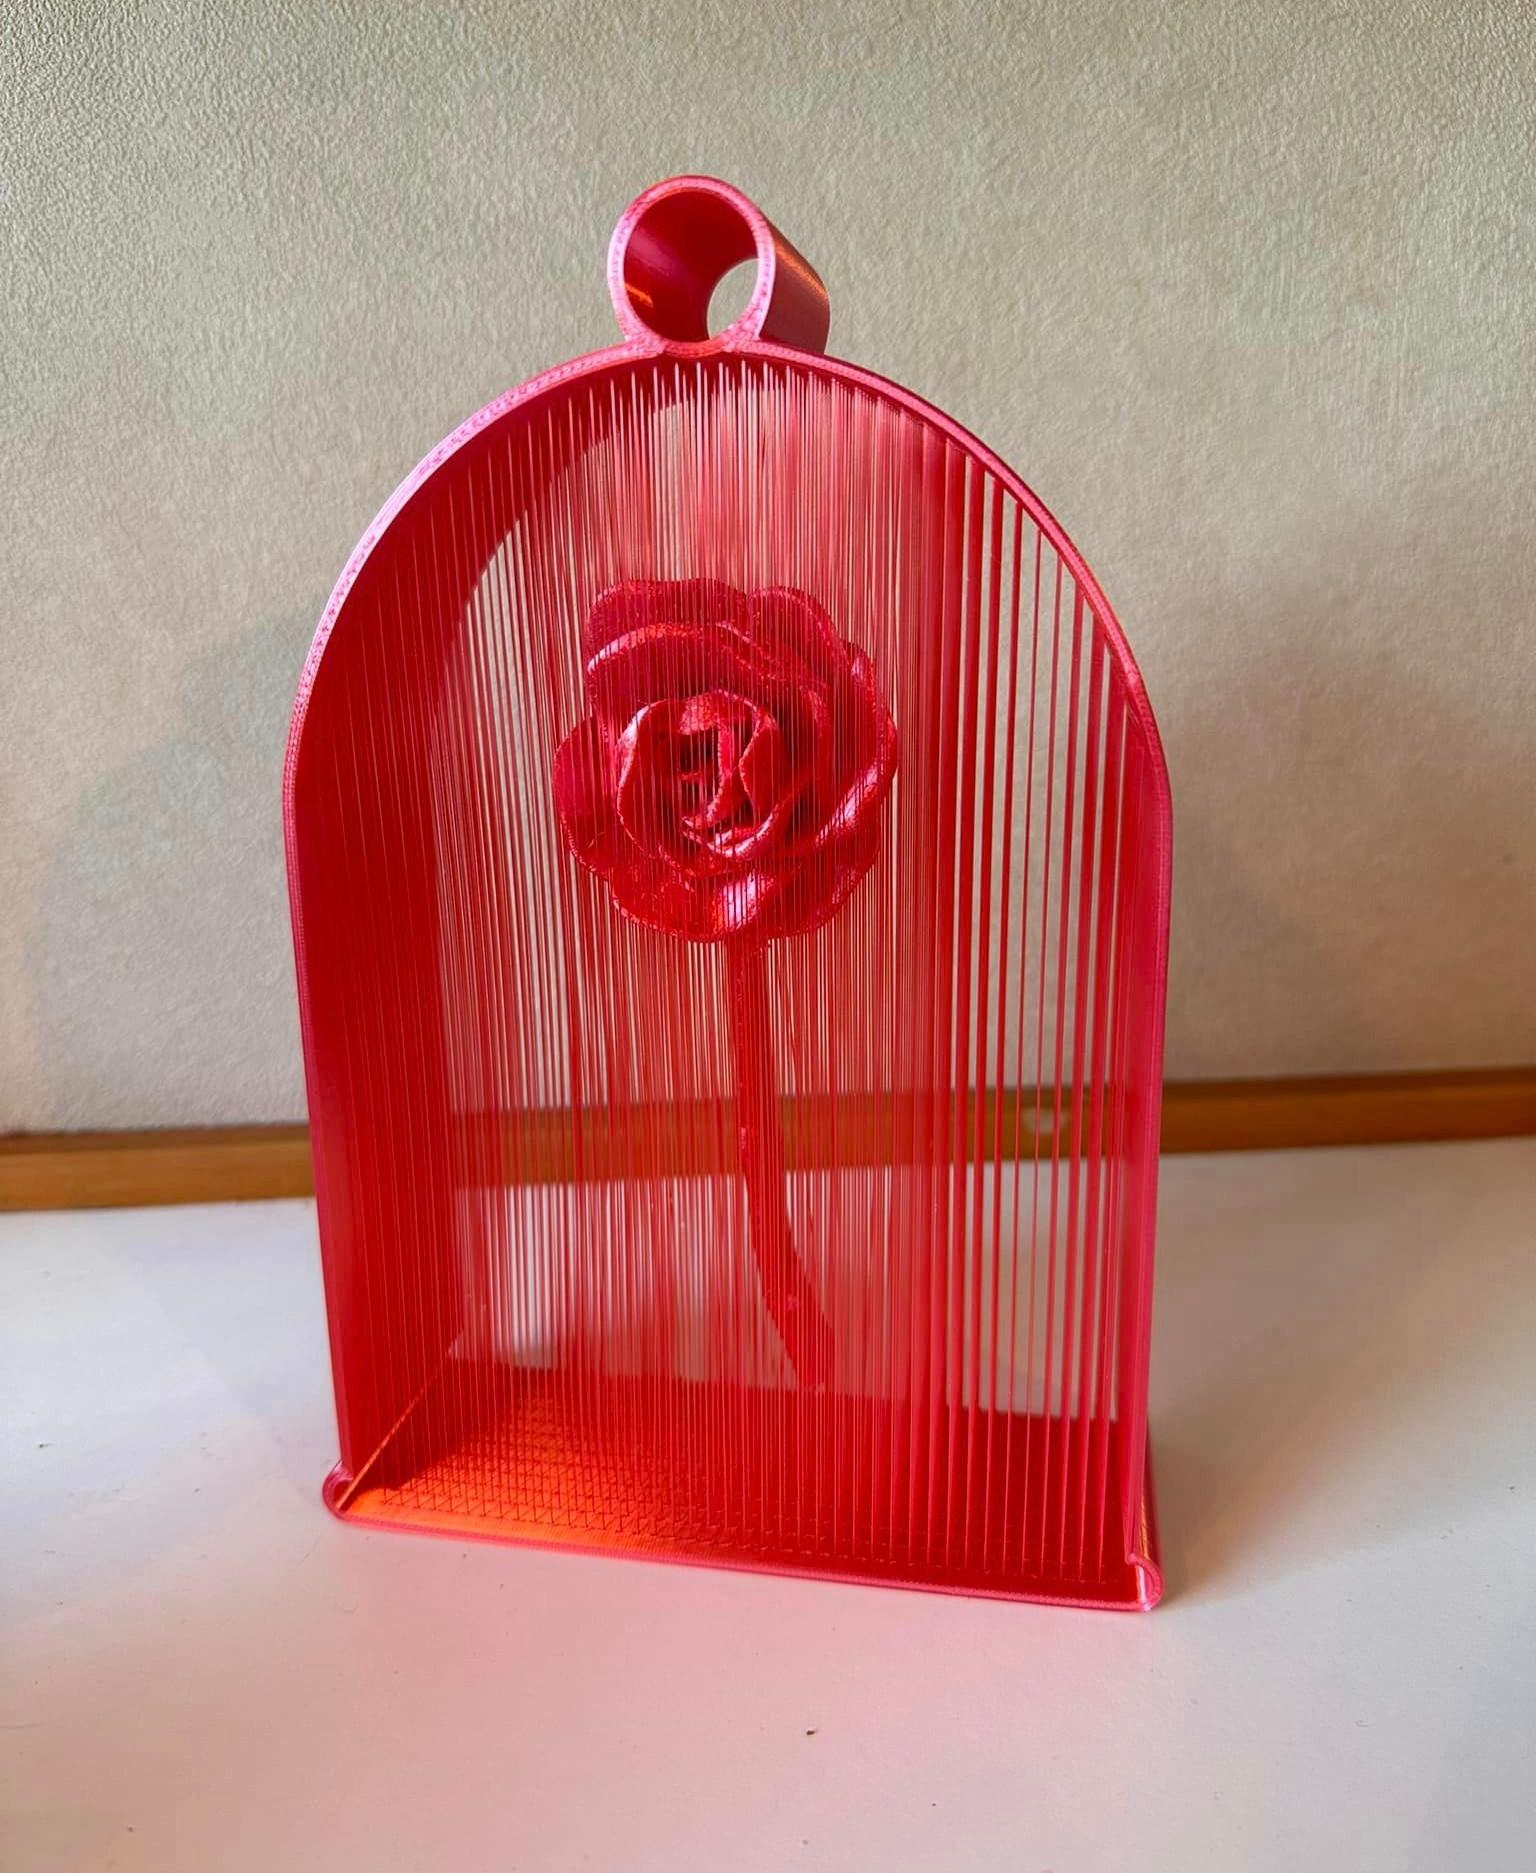 Suspended Rose String Art - Just a brilliant design! - 3d model